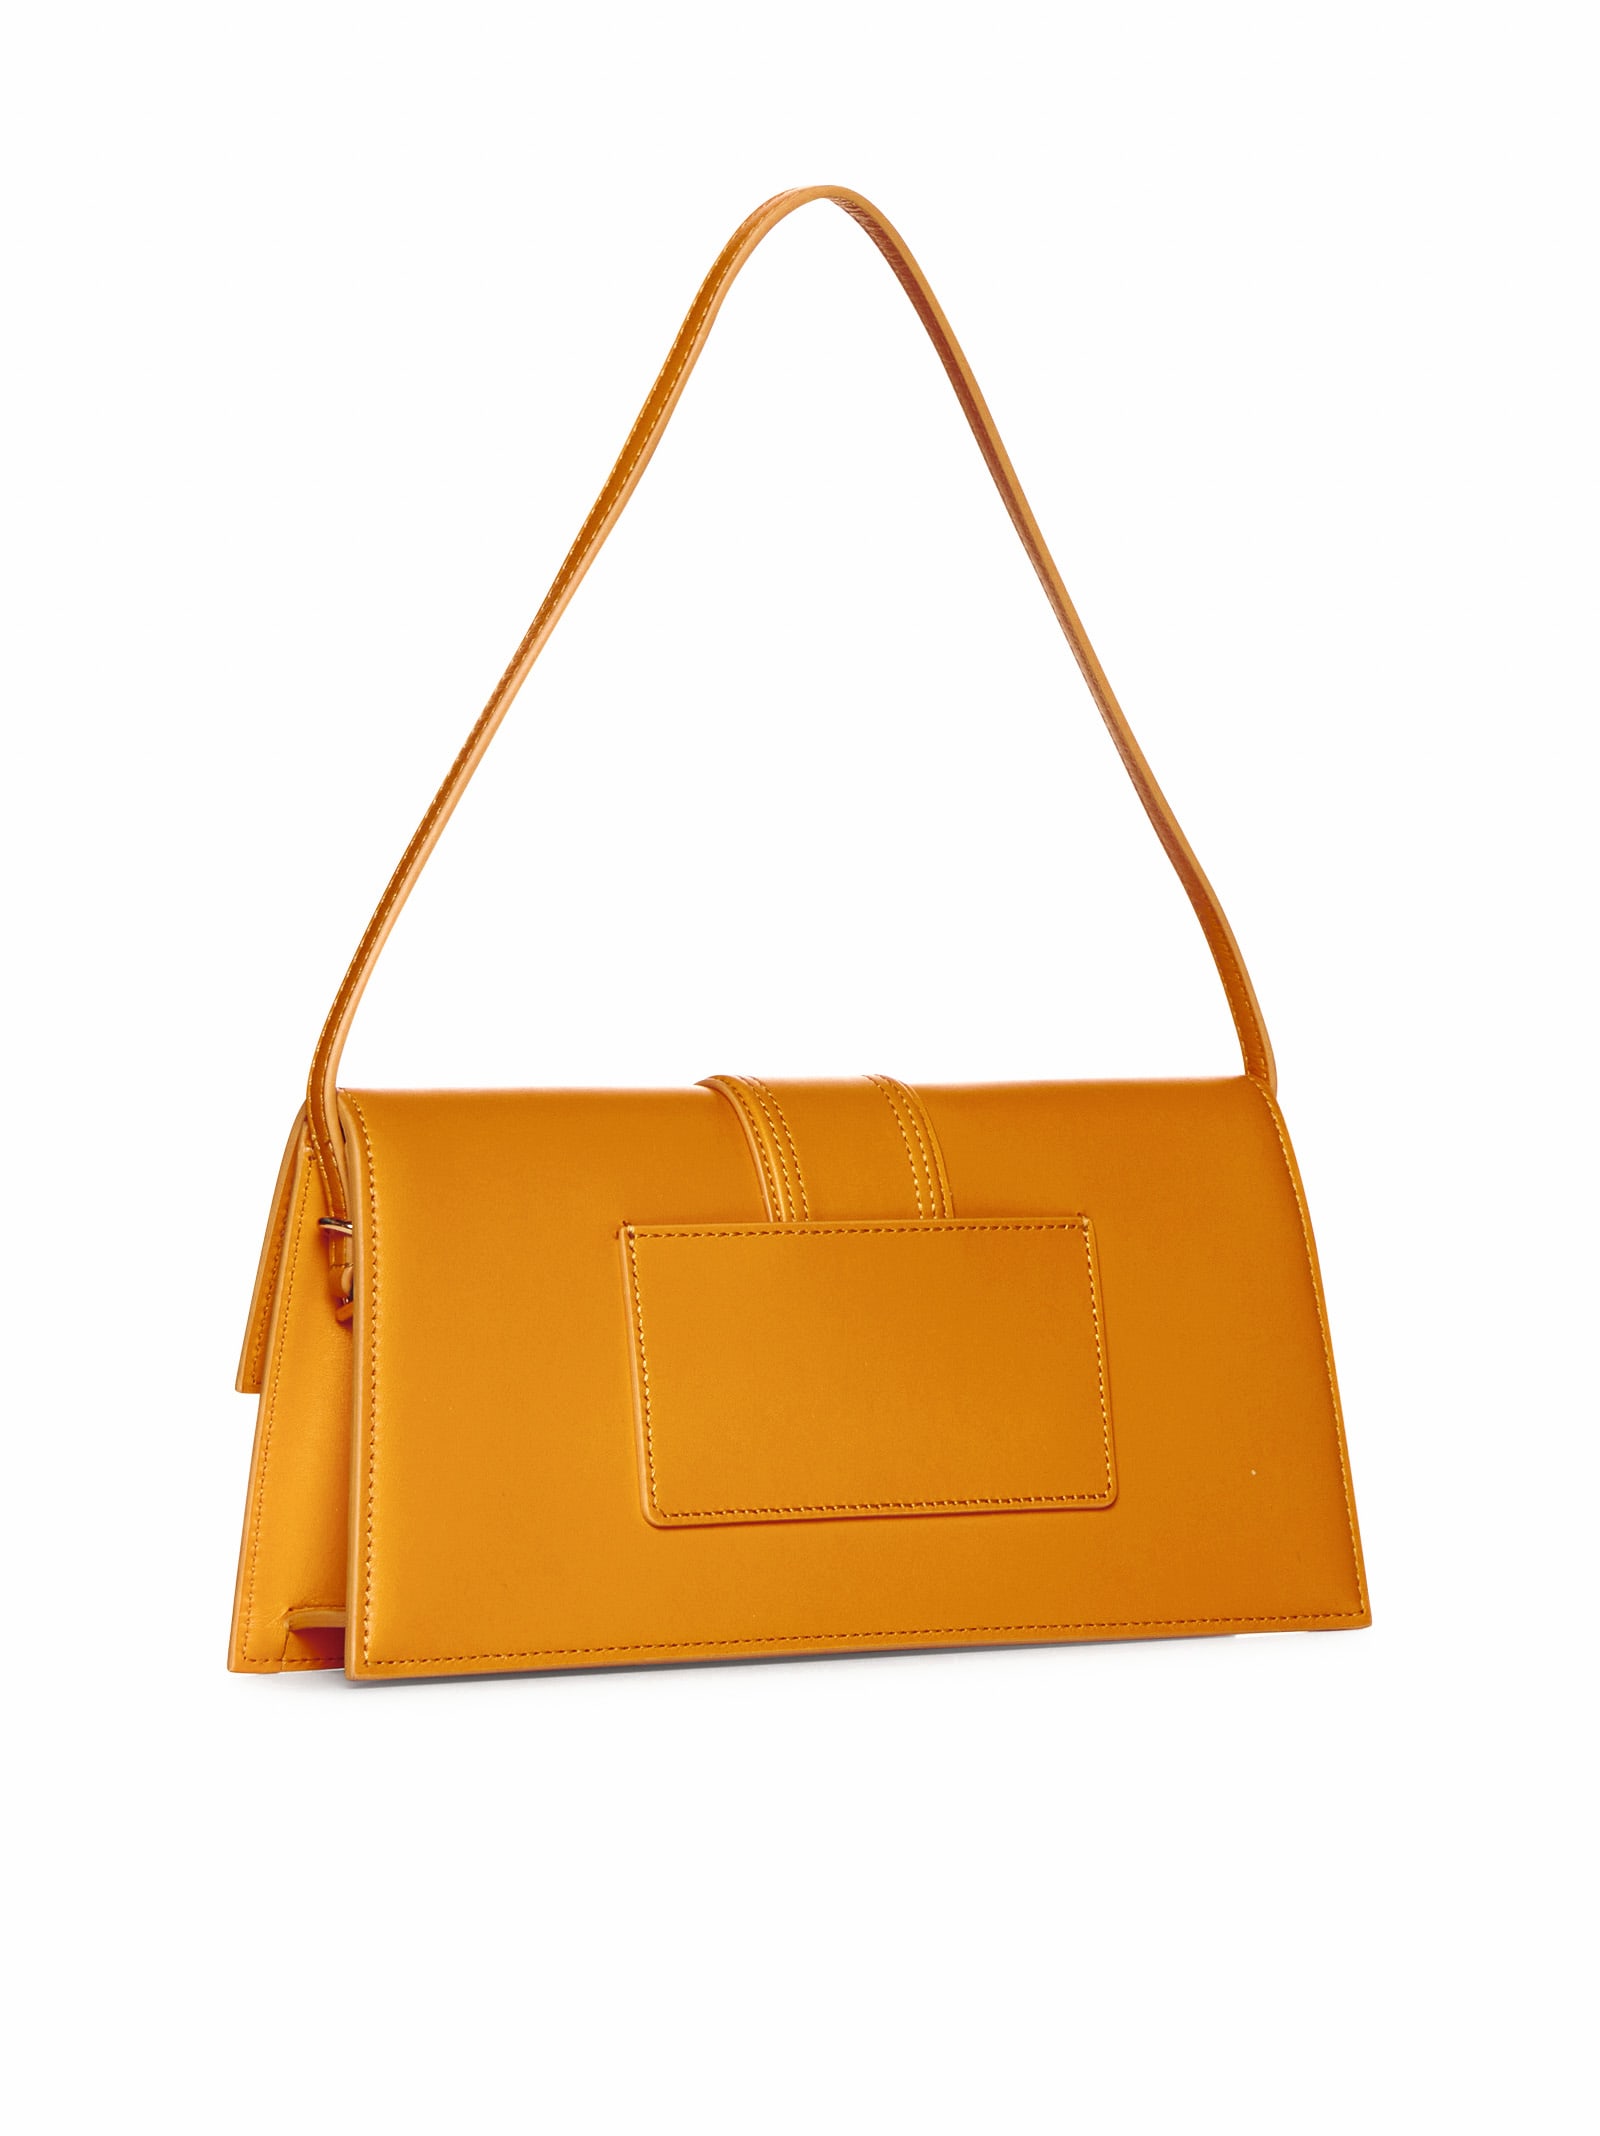 Shop Jacquemus Shoulder Bag In Dark Orange